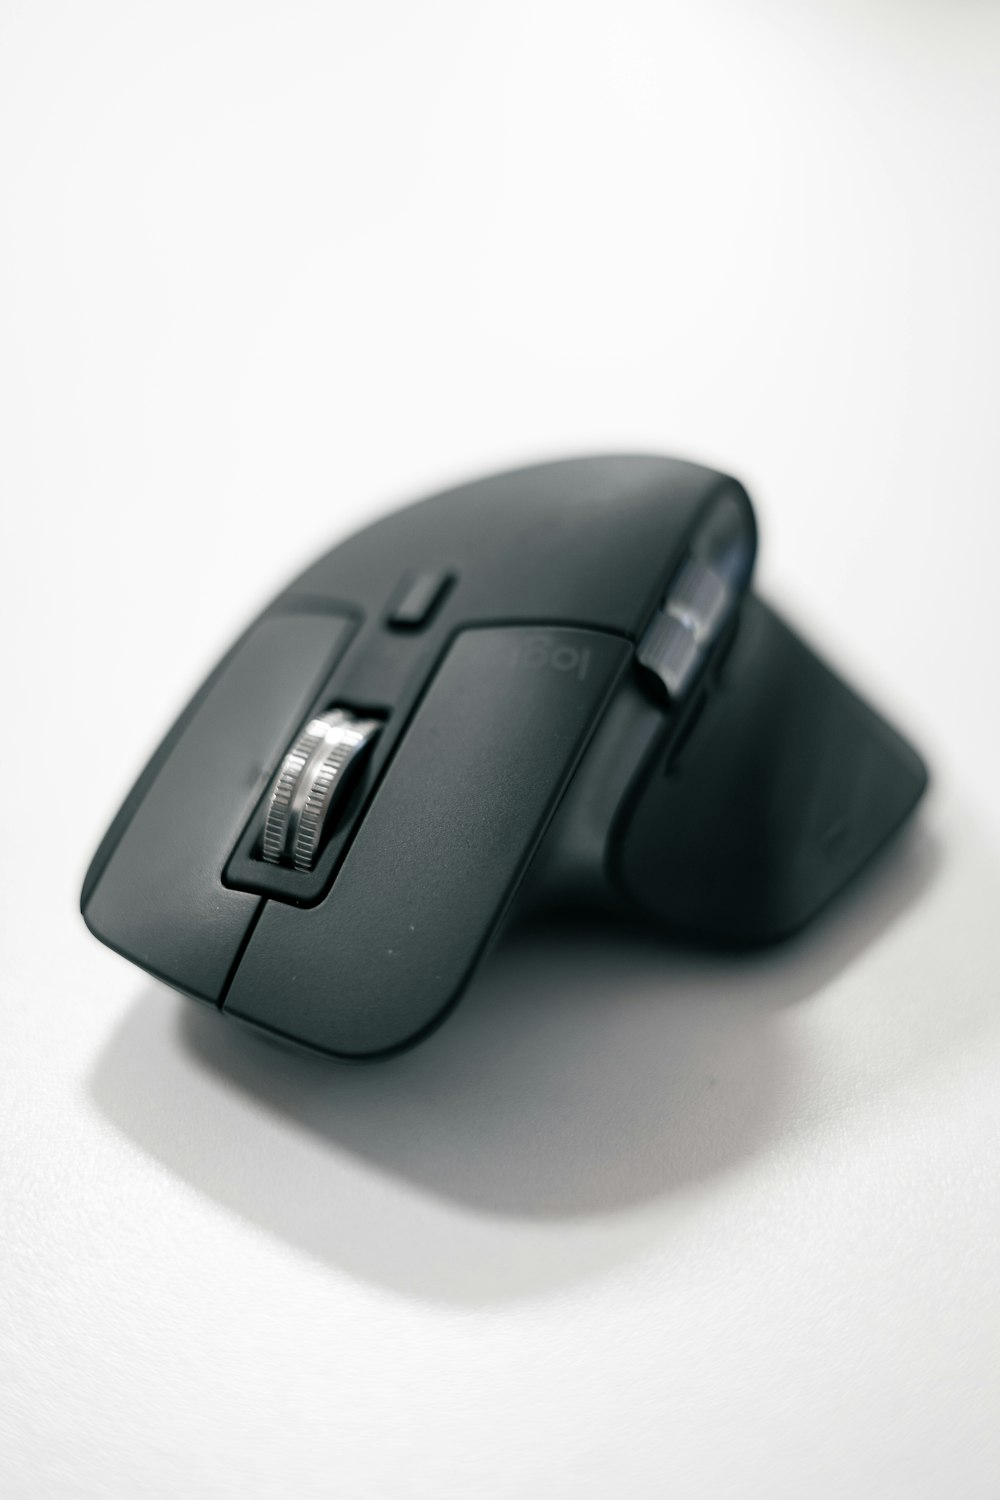 um mouse de computador preto